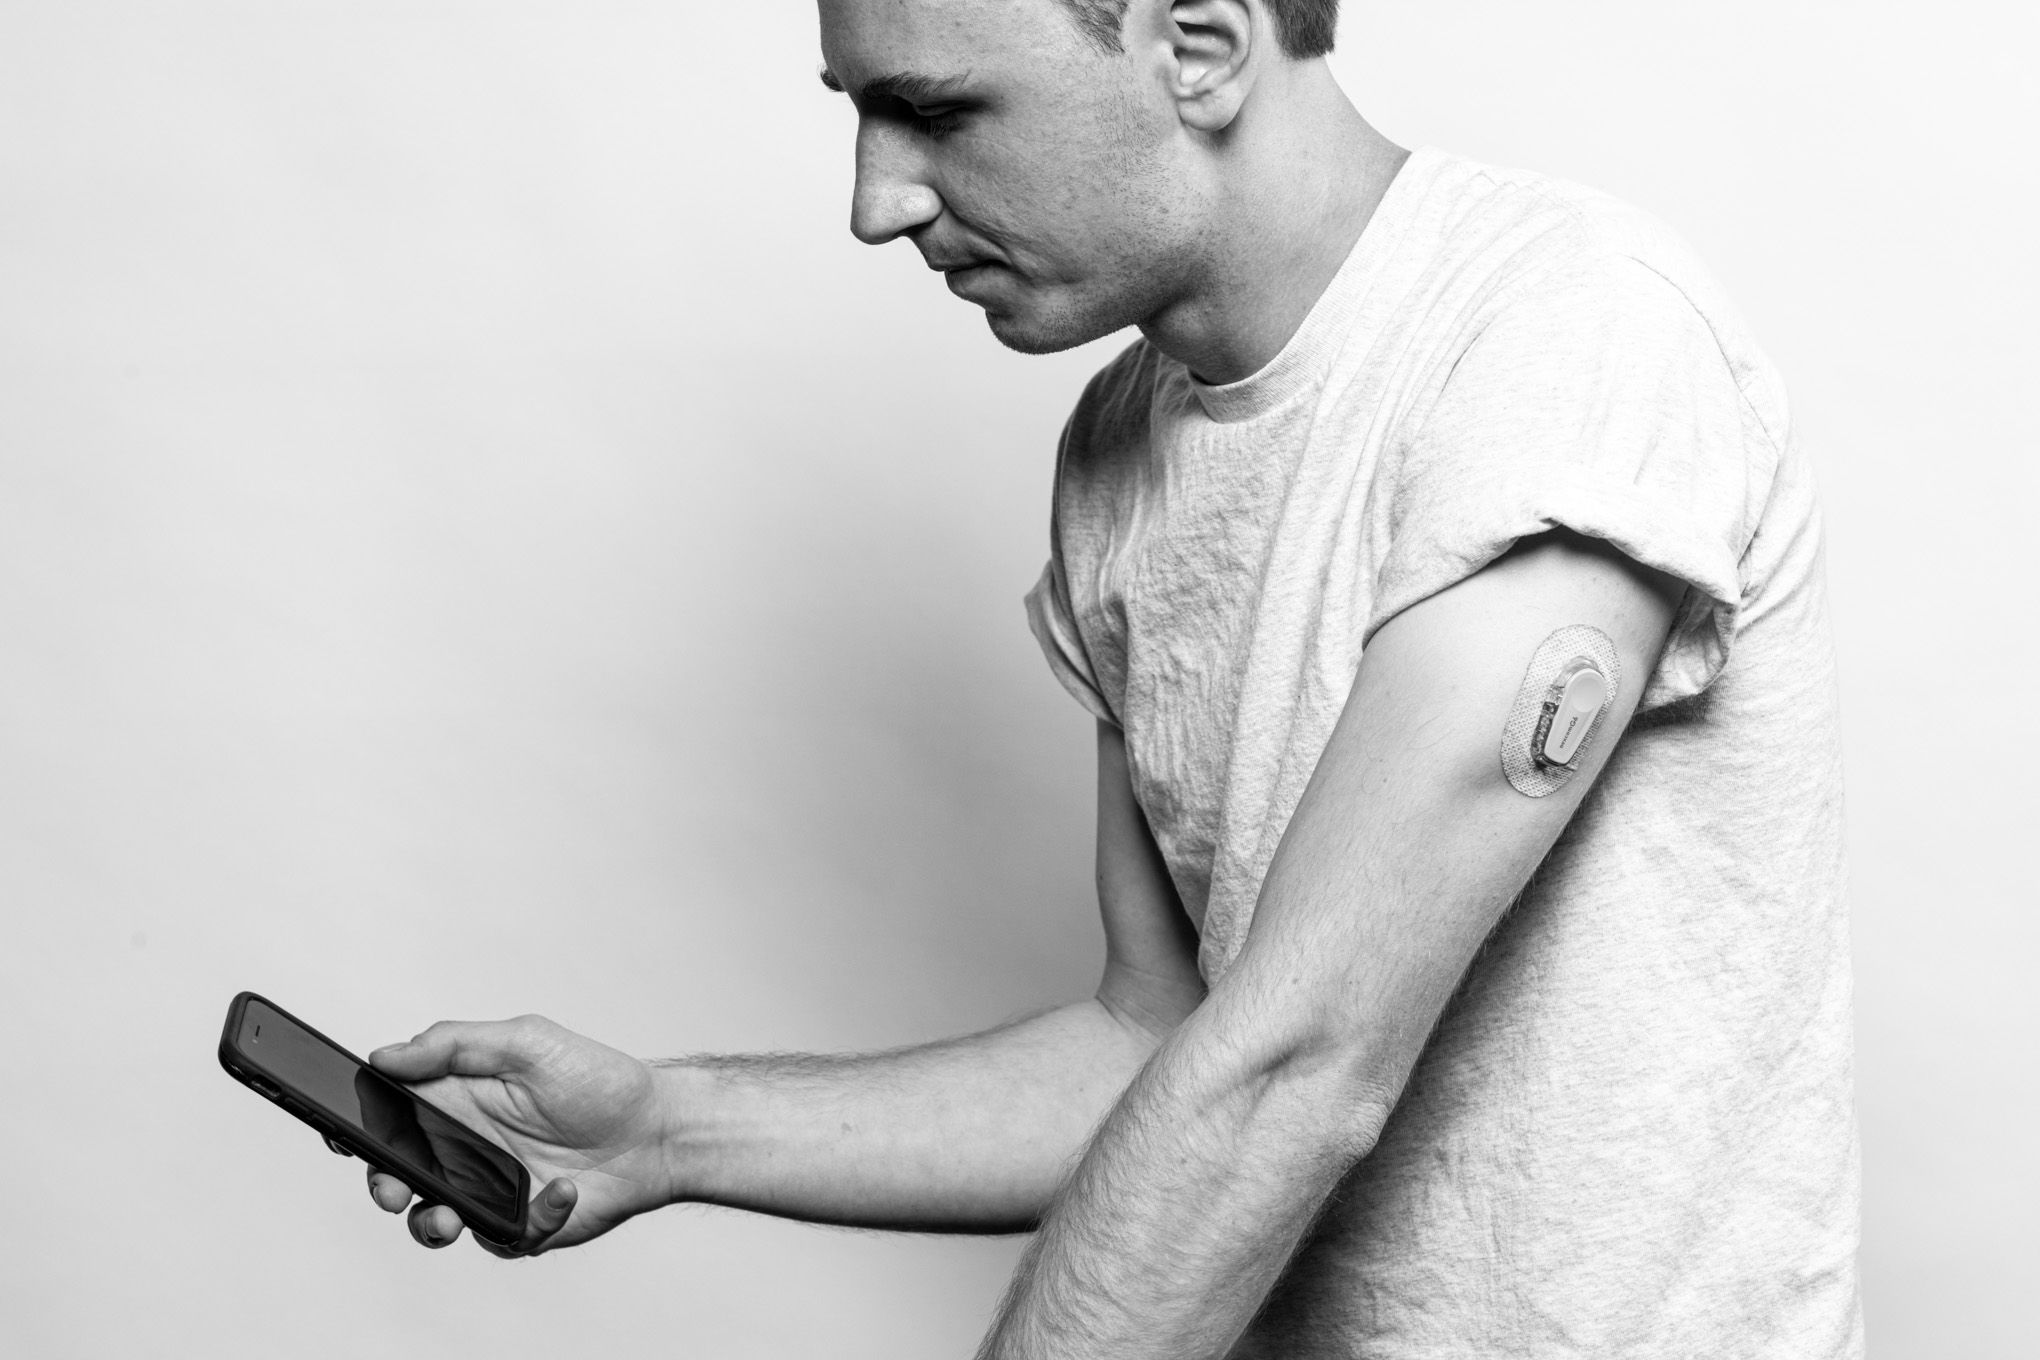 Une photographie en noir et blanc de John regardant son téléphone.  Il porte un glucomètre sur le haut de son bras gauche.